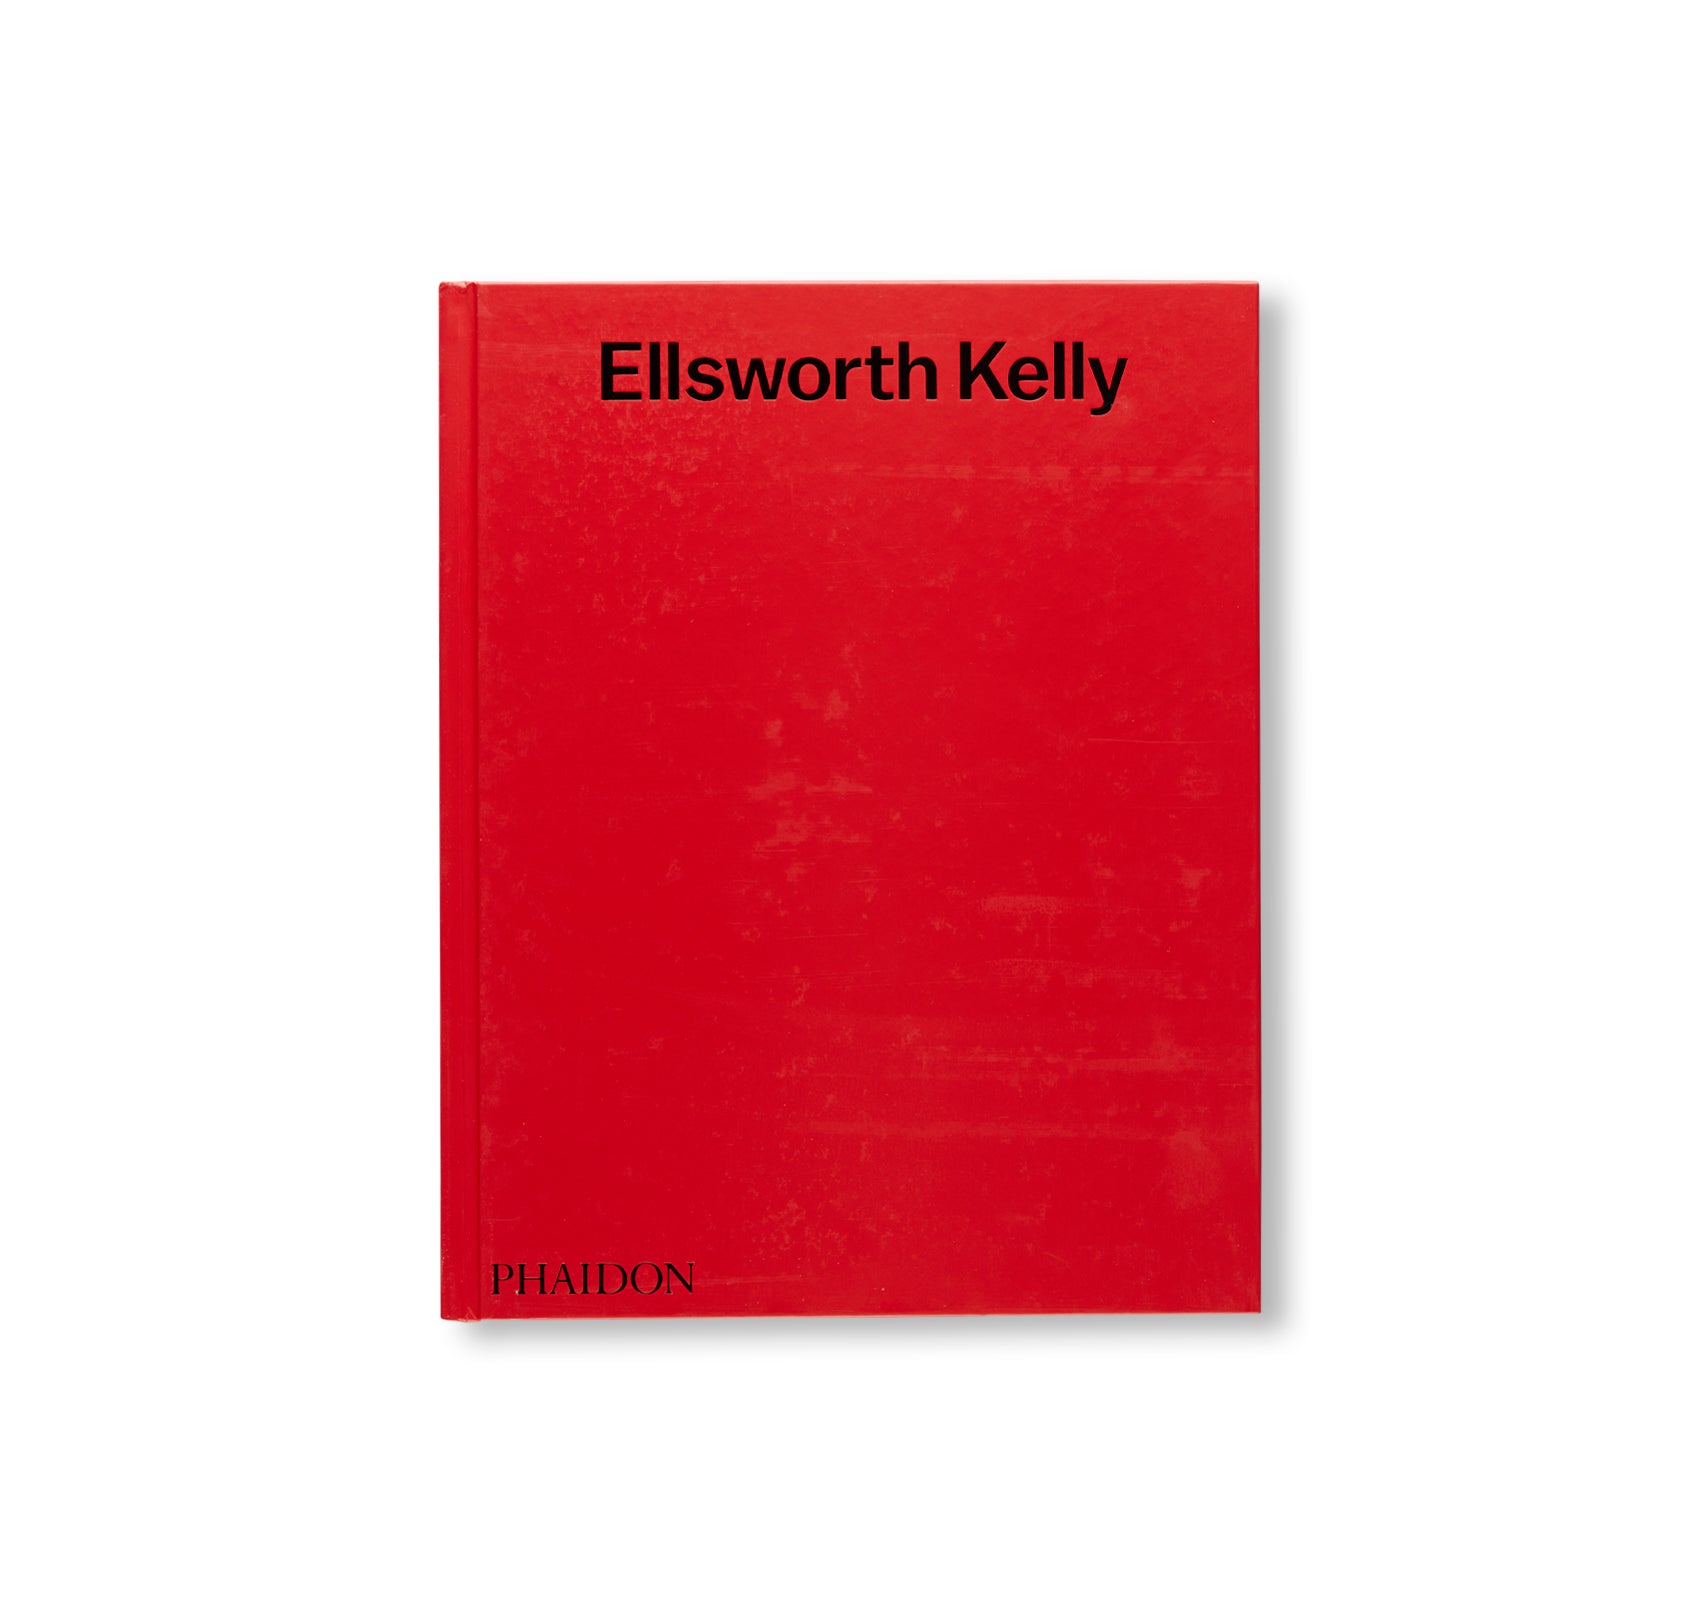 ELLSWORTH KELLY (2018) by Ellsworth Kelly